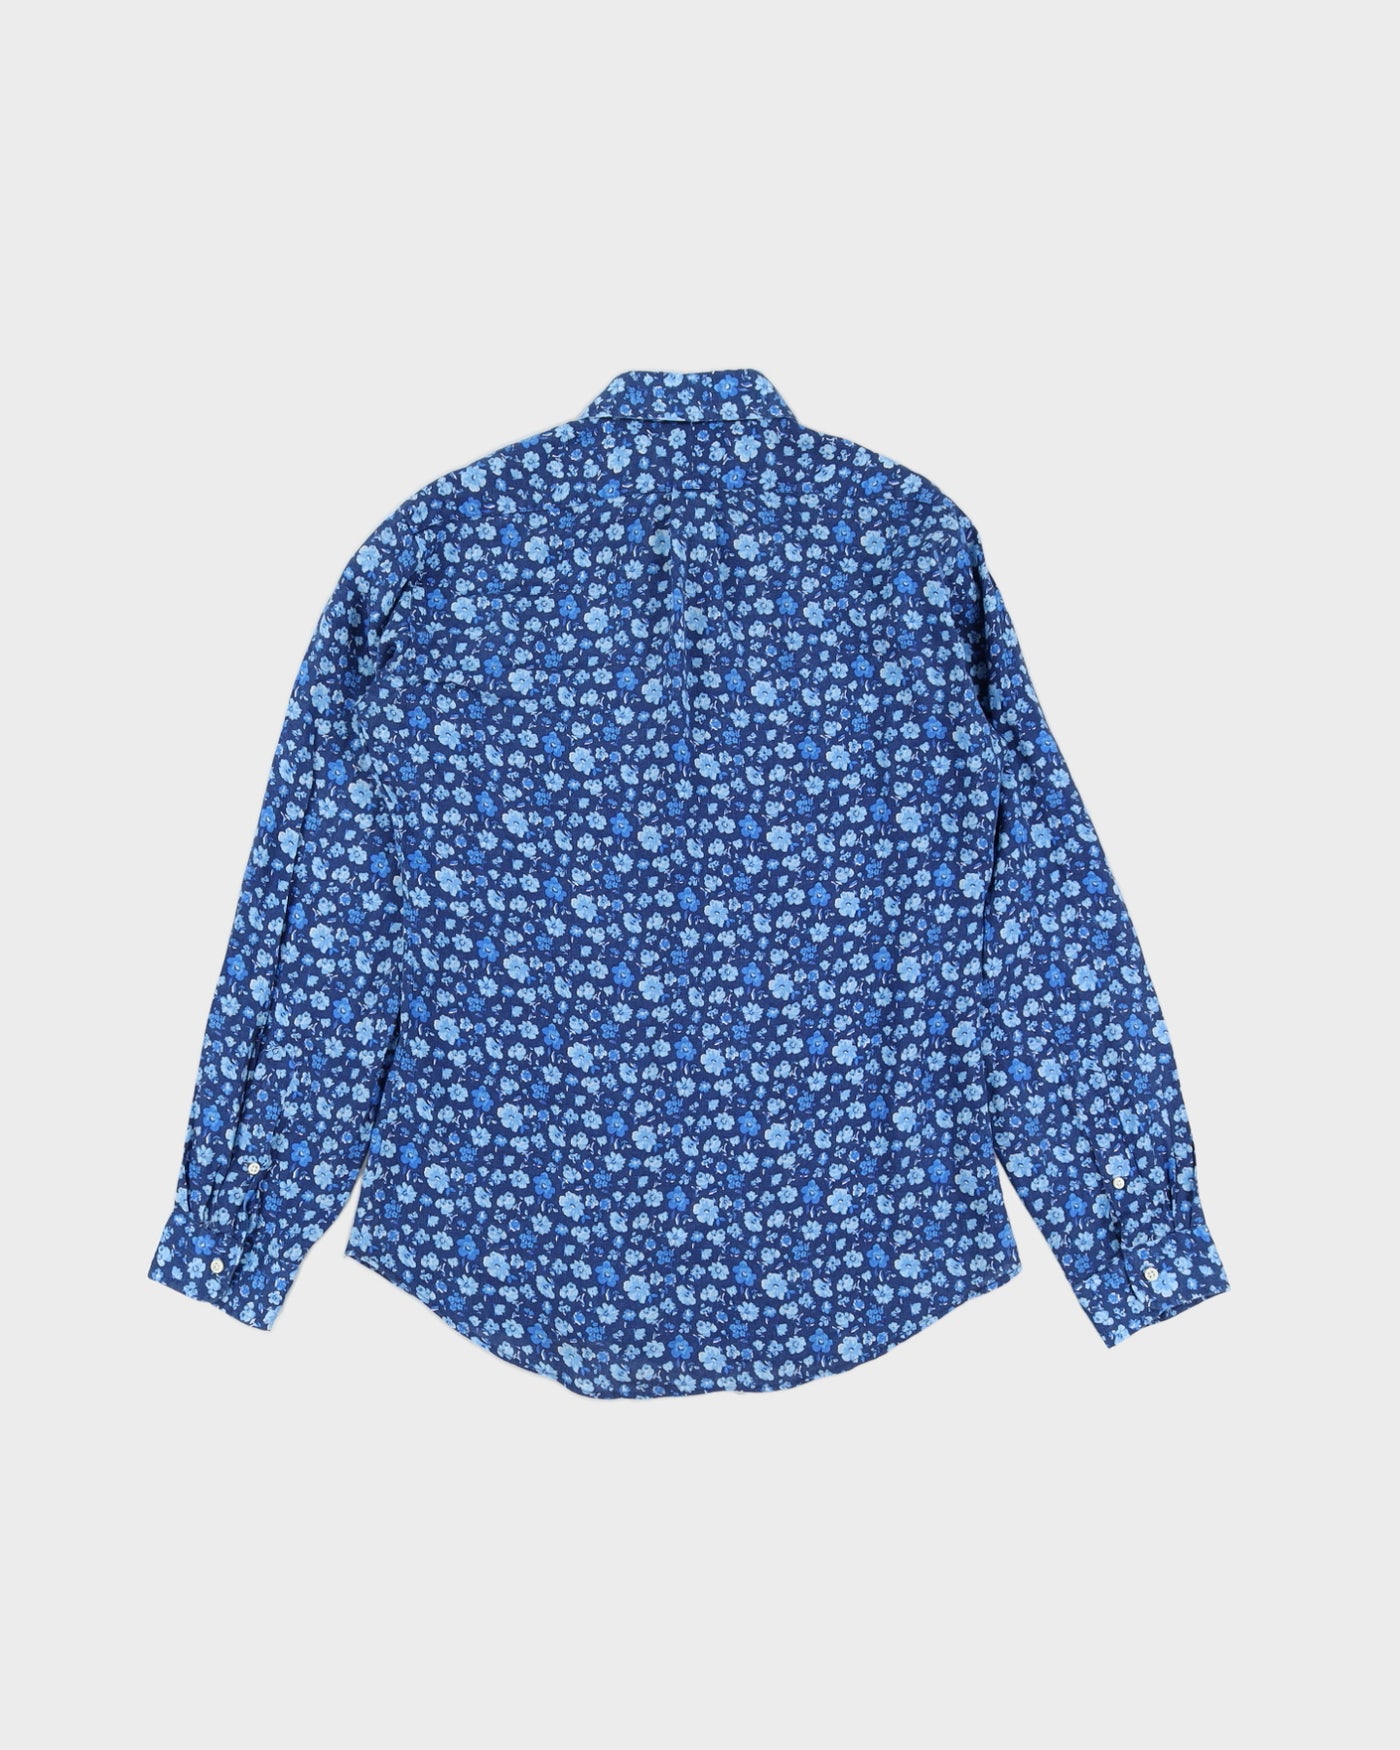 Ralph Lauren Flowers Printed Blue Long Sleeved Shirt  - L